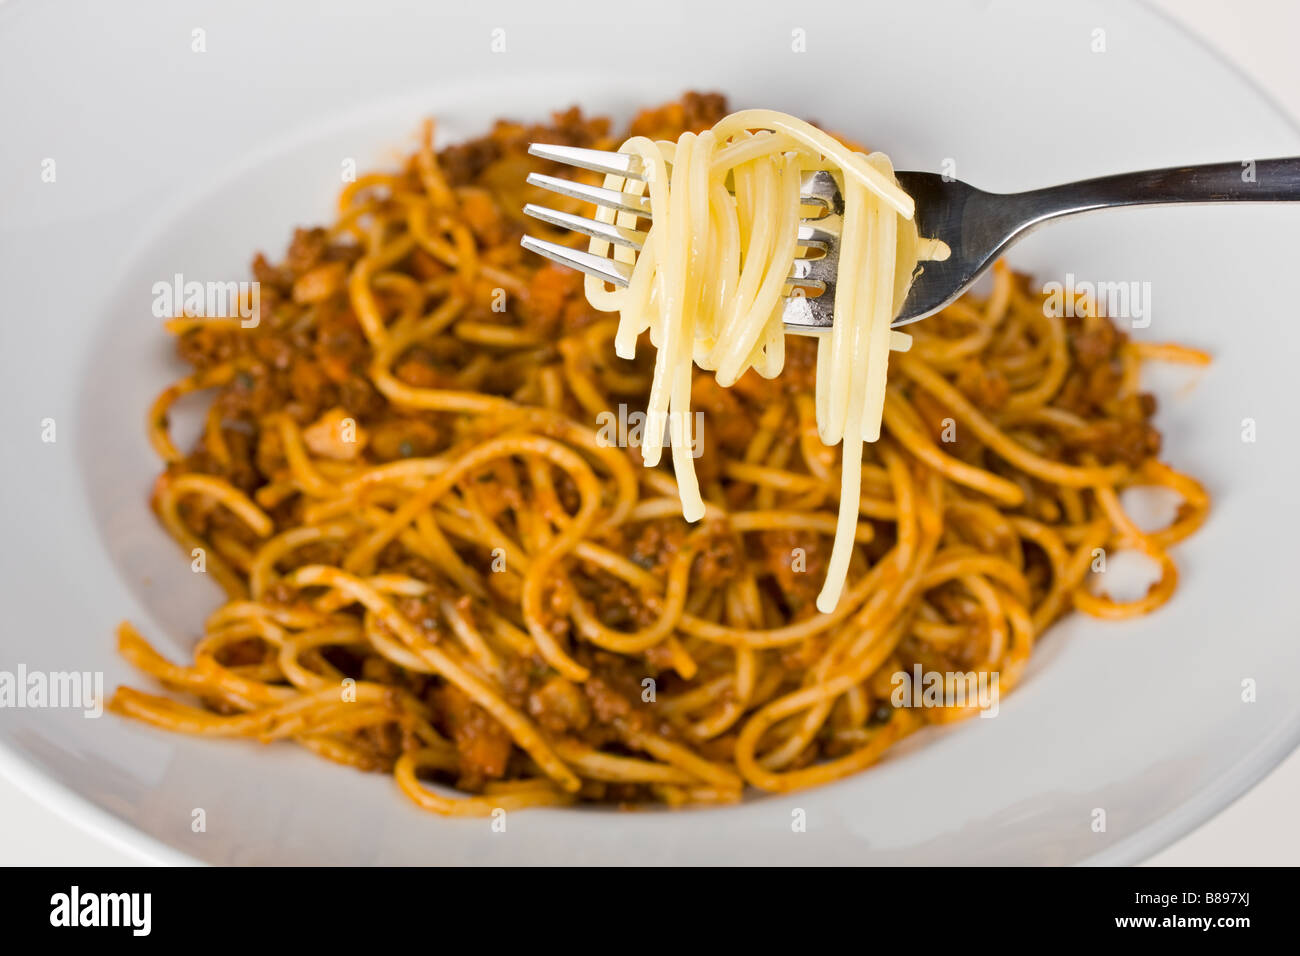 Forcella su una piastra con gli spaghetti bolognese Foto Stock